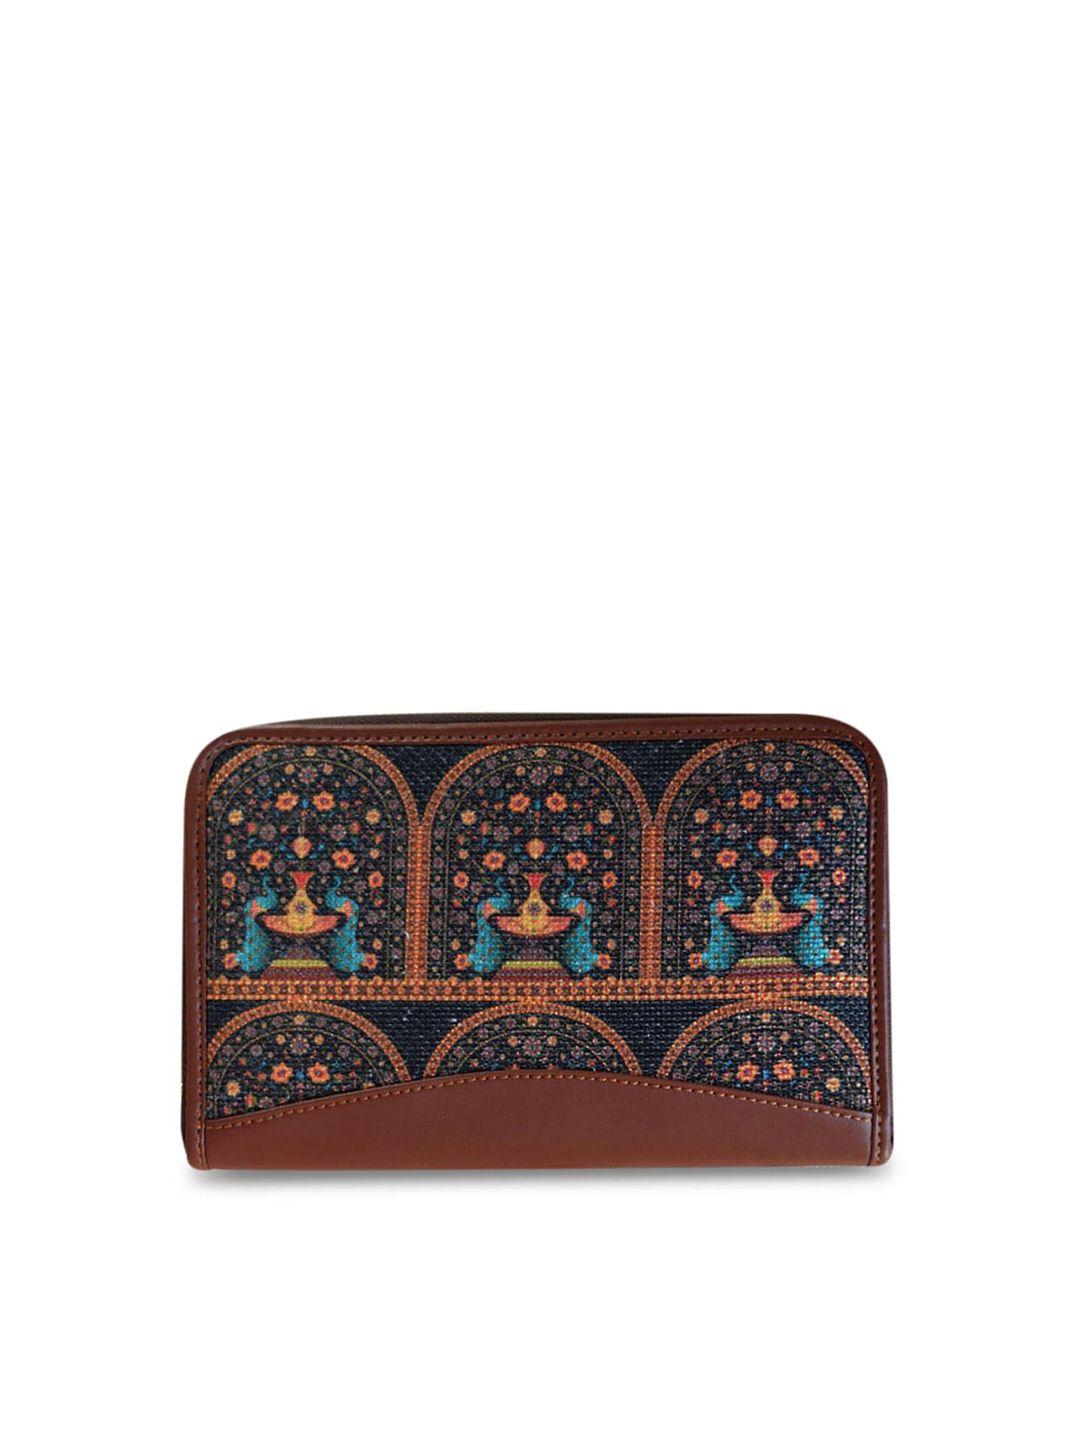 zouk women brown & blue ethnic motifs printed zip around wallet with sim card holder